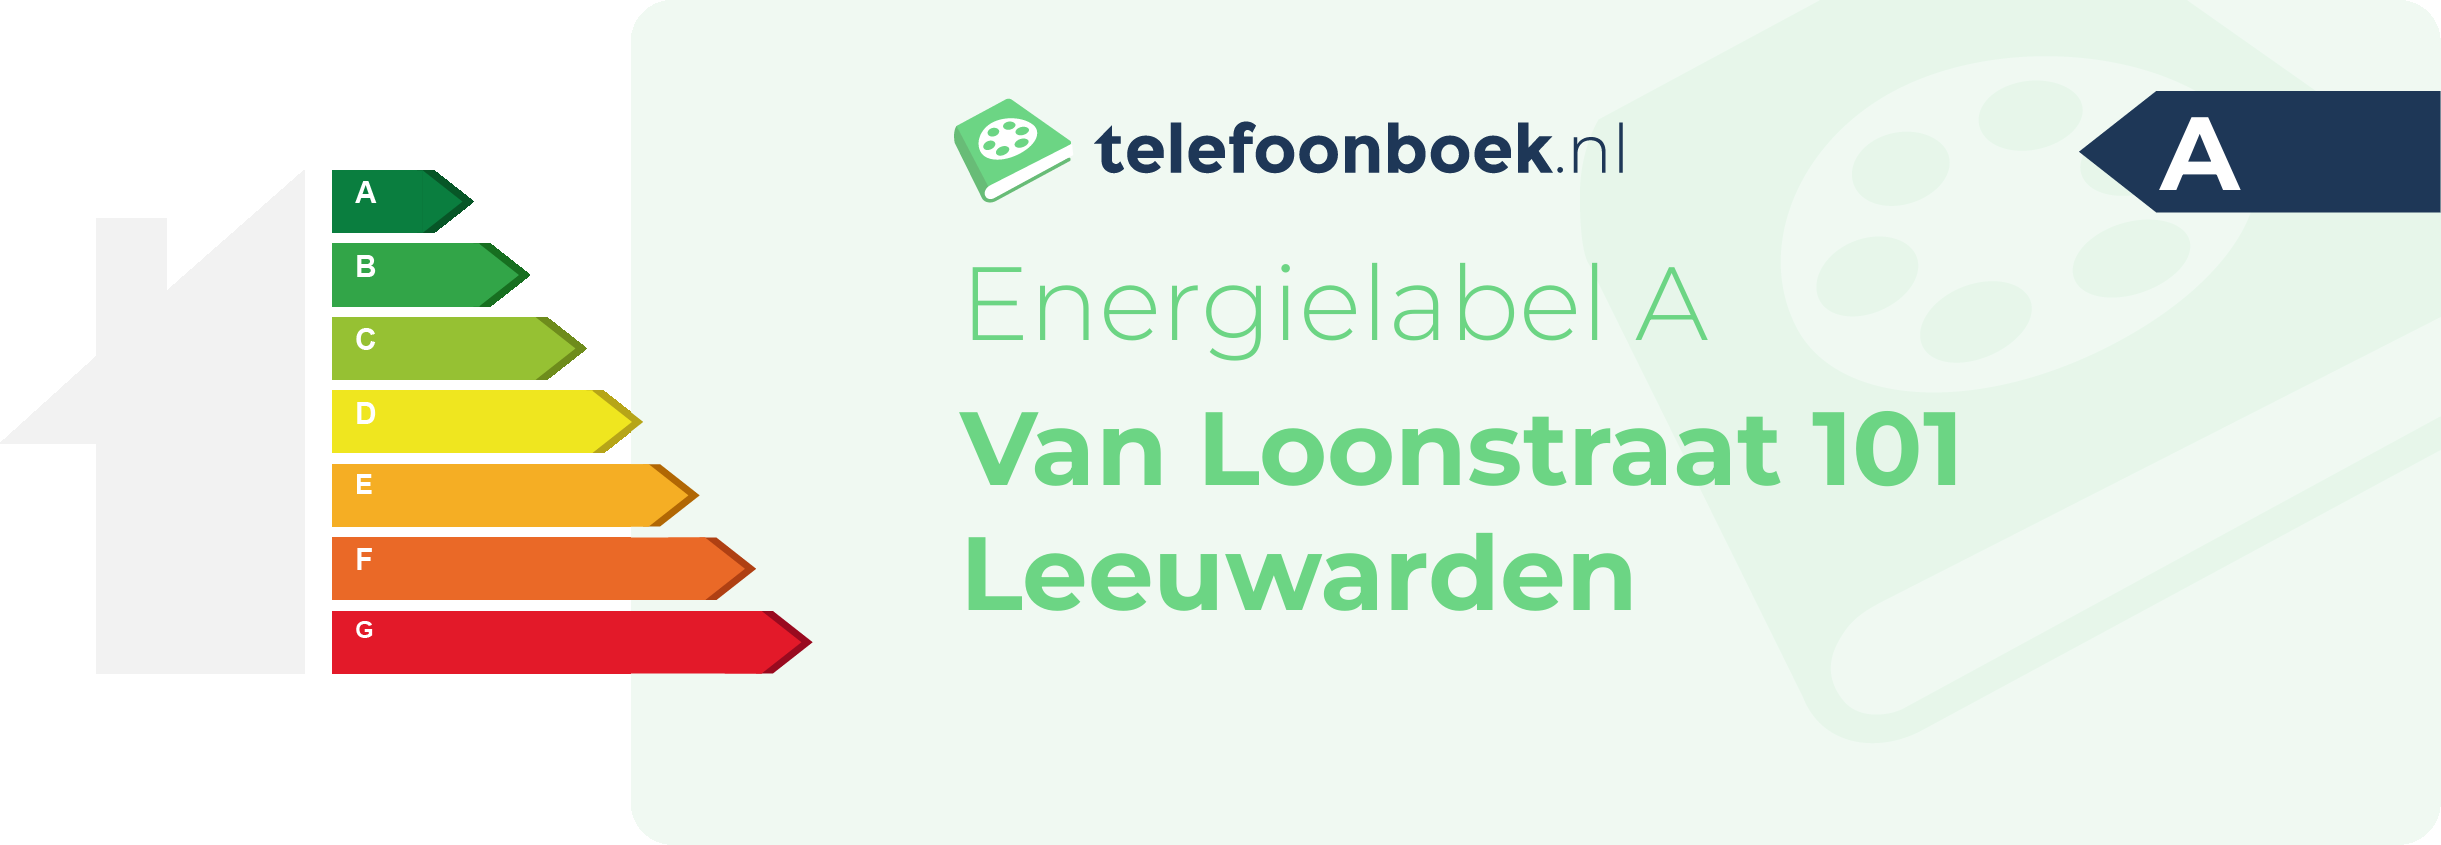 Energielabel Van Loonstraat 101 Leeuwarden